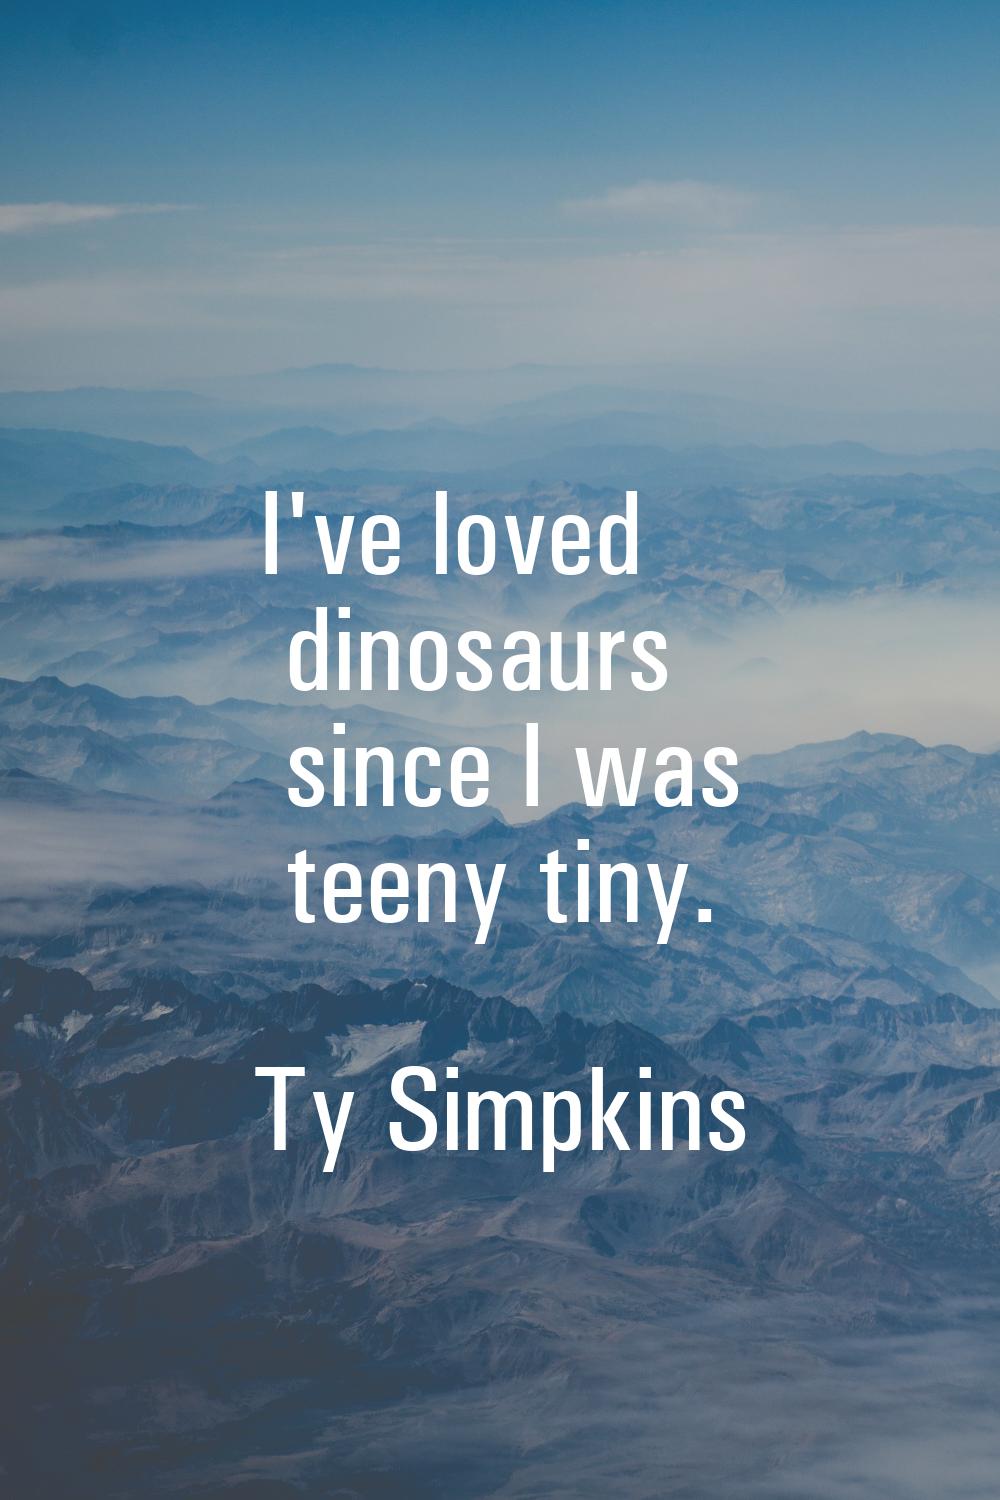 I've loved dinosaurs since I was teeny tiny.